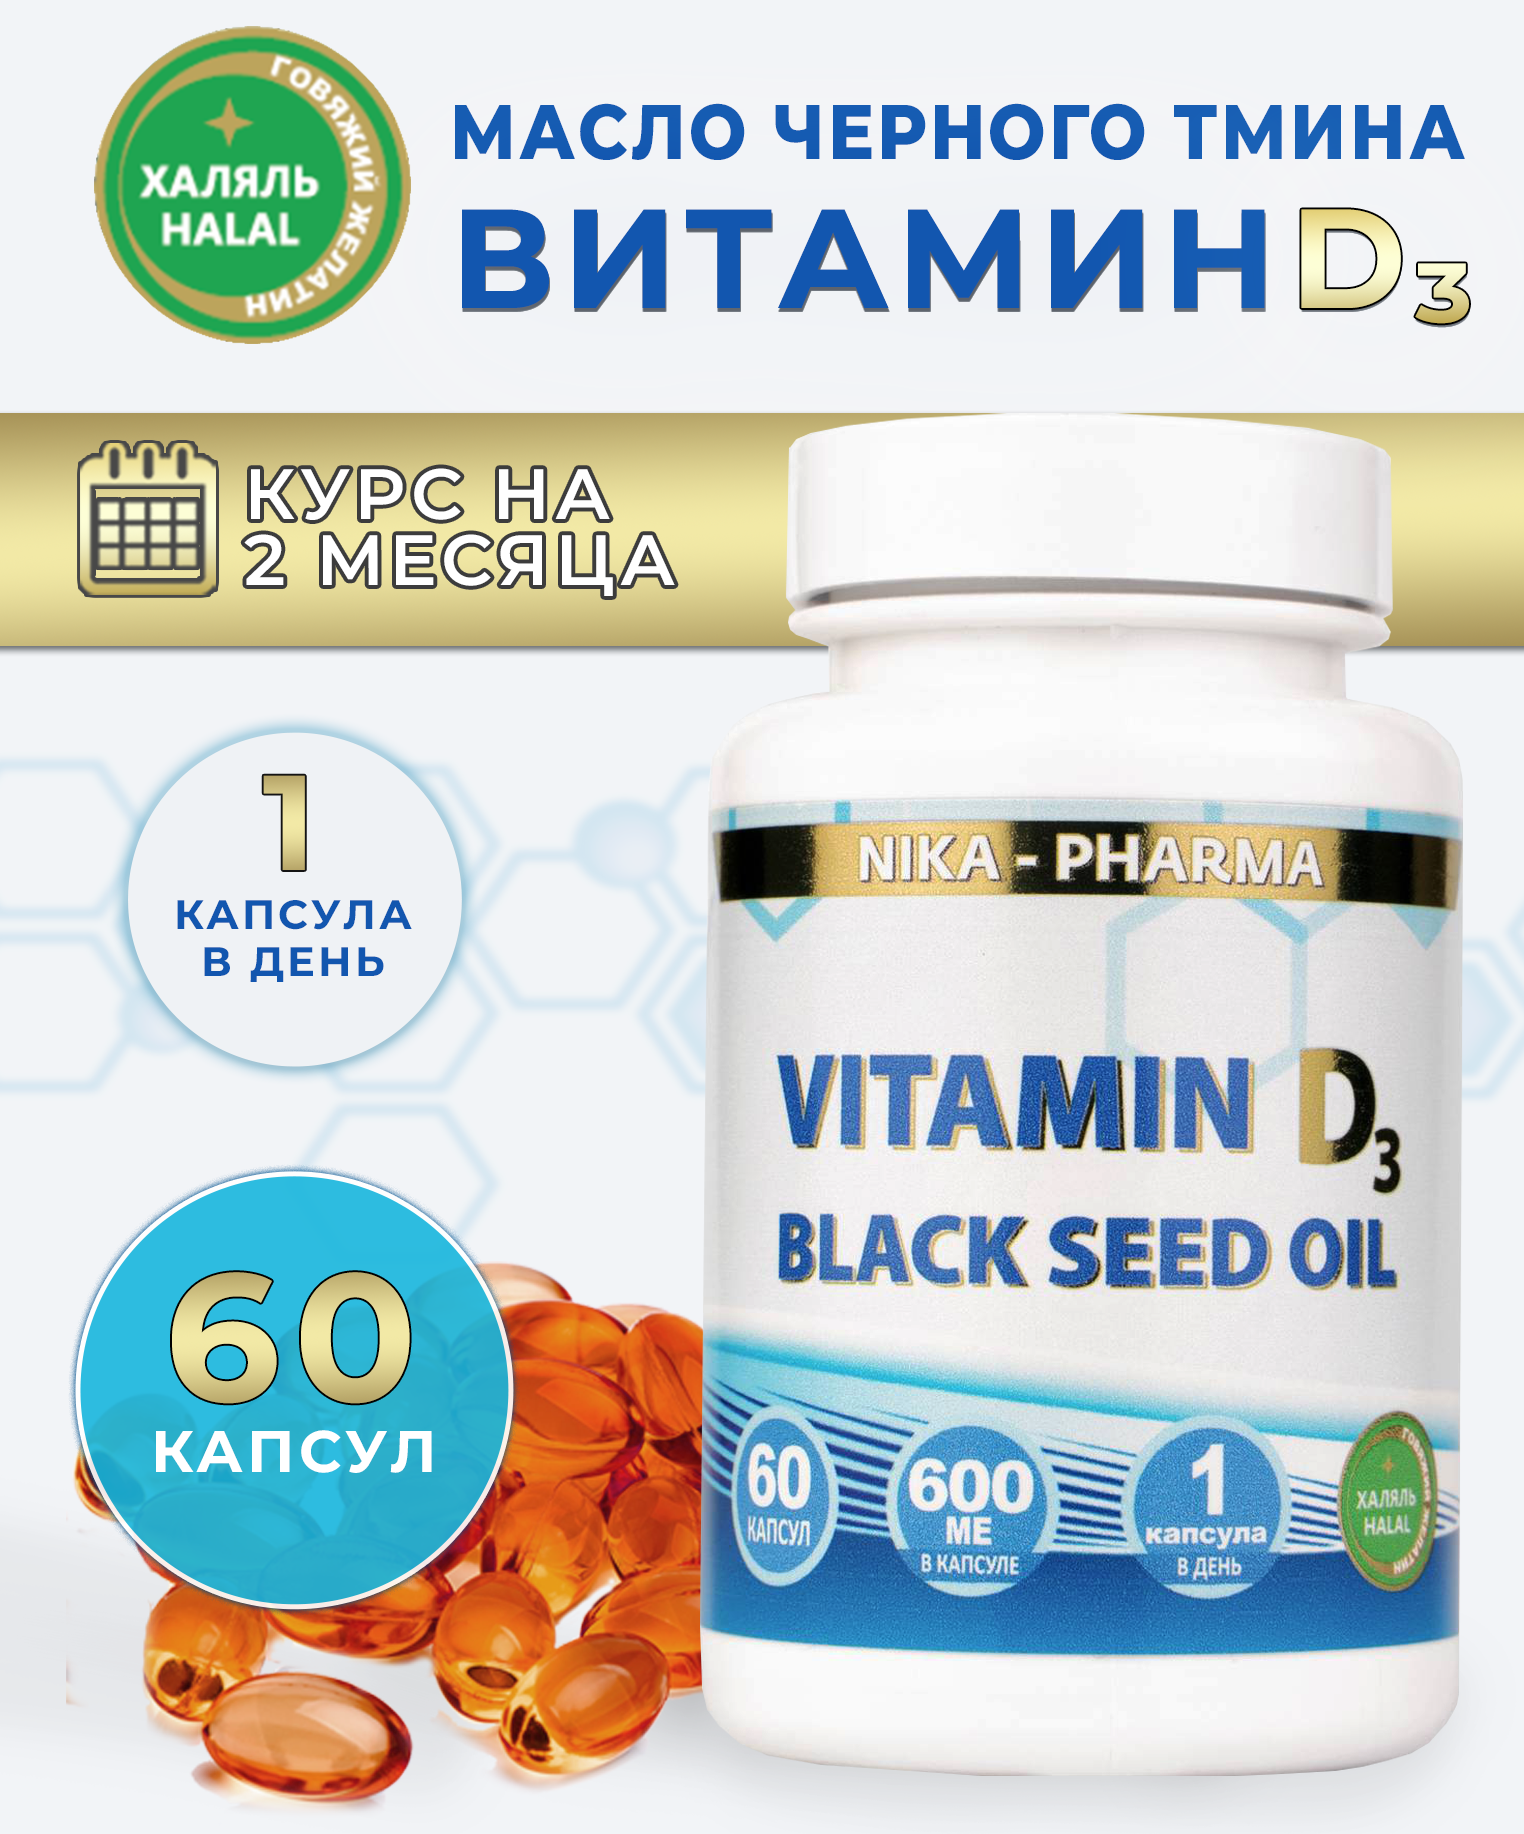 Витамин Д NIKA-PHARMA с маслом черного тмина - фото 2